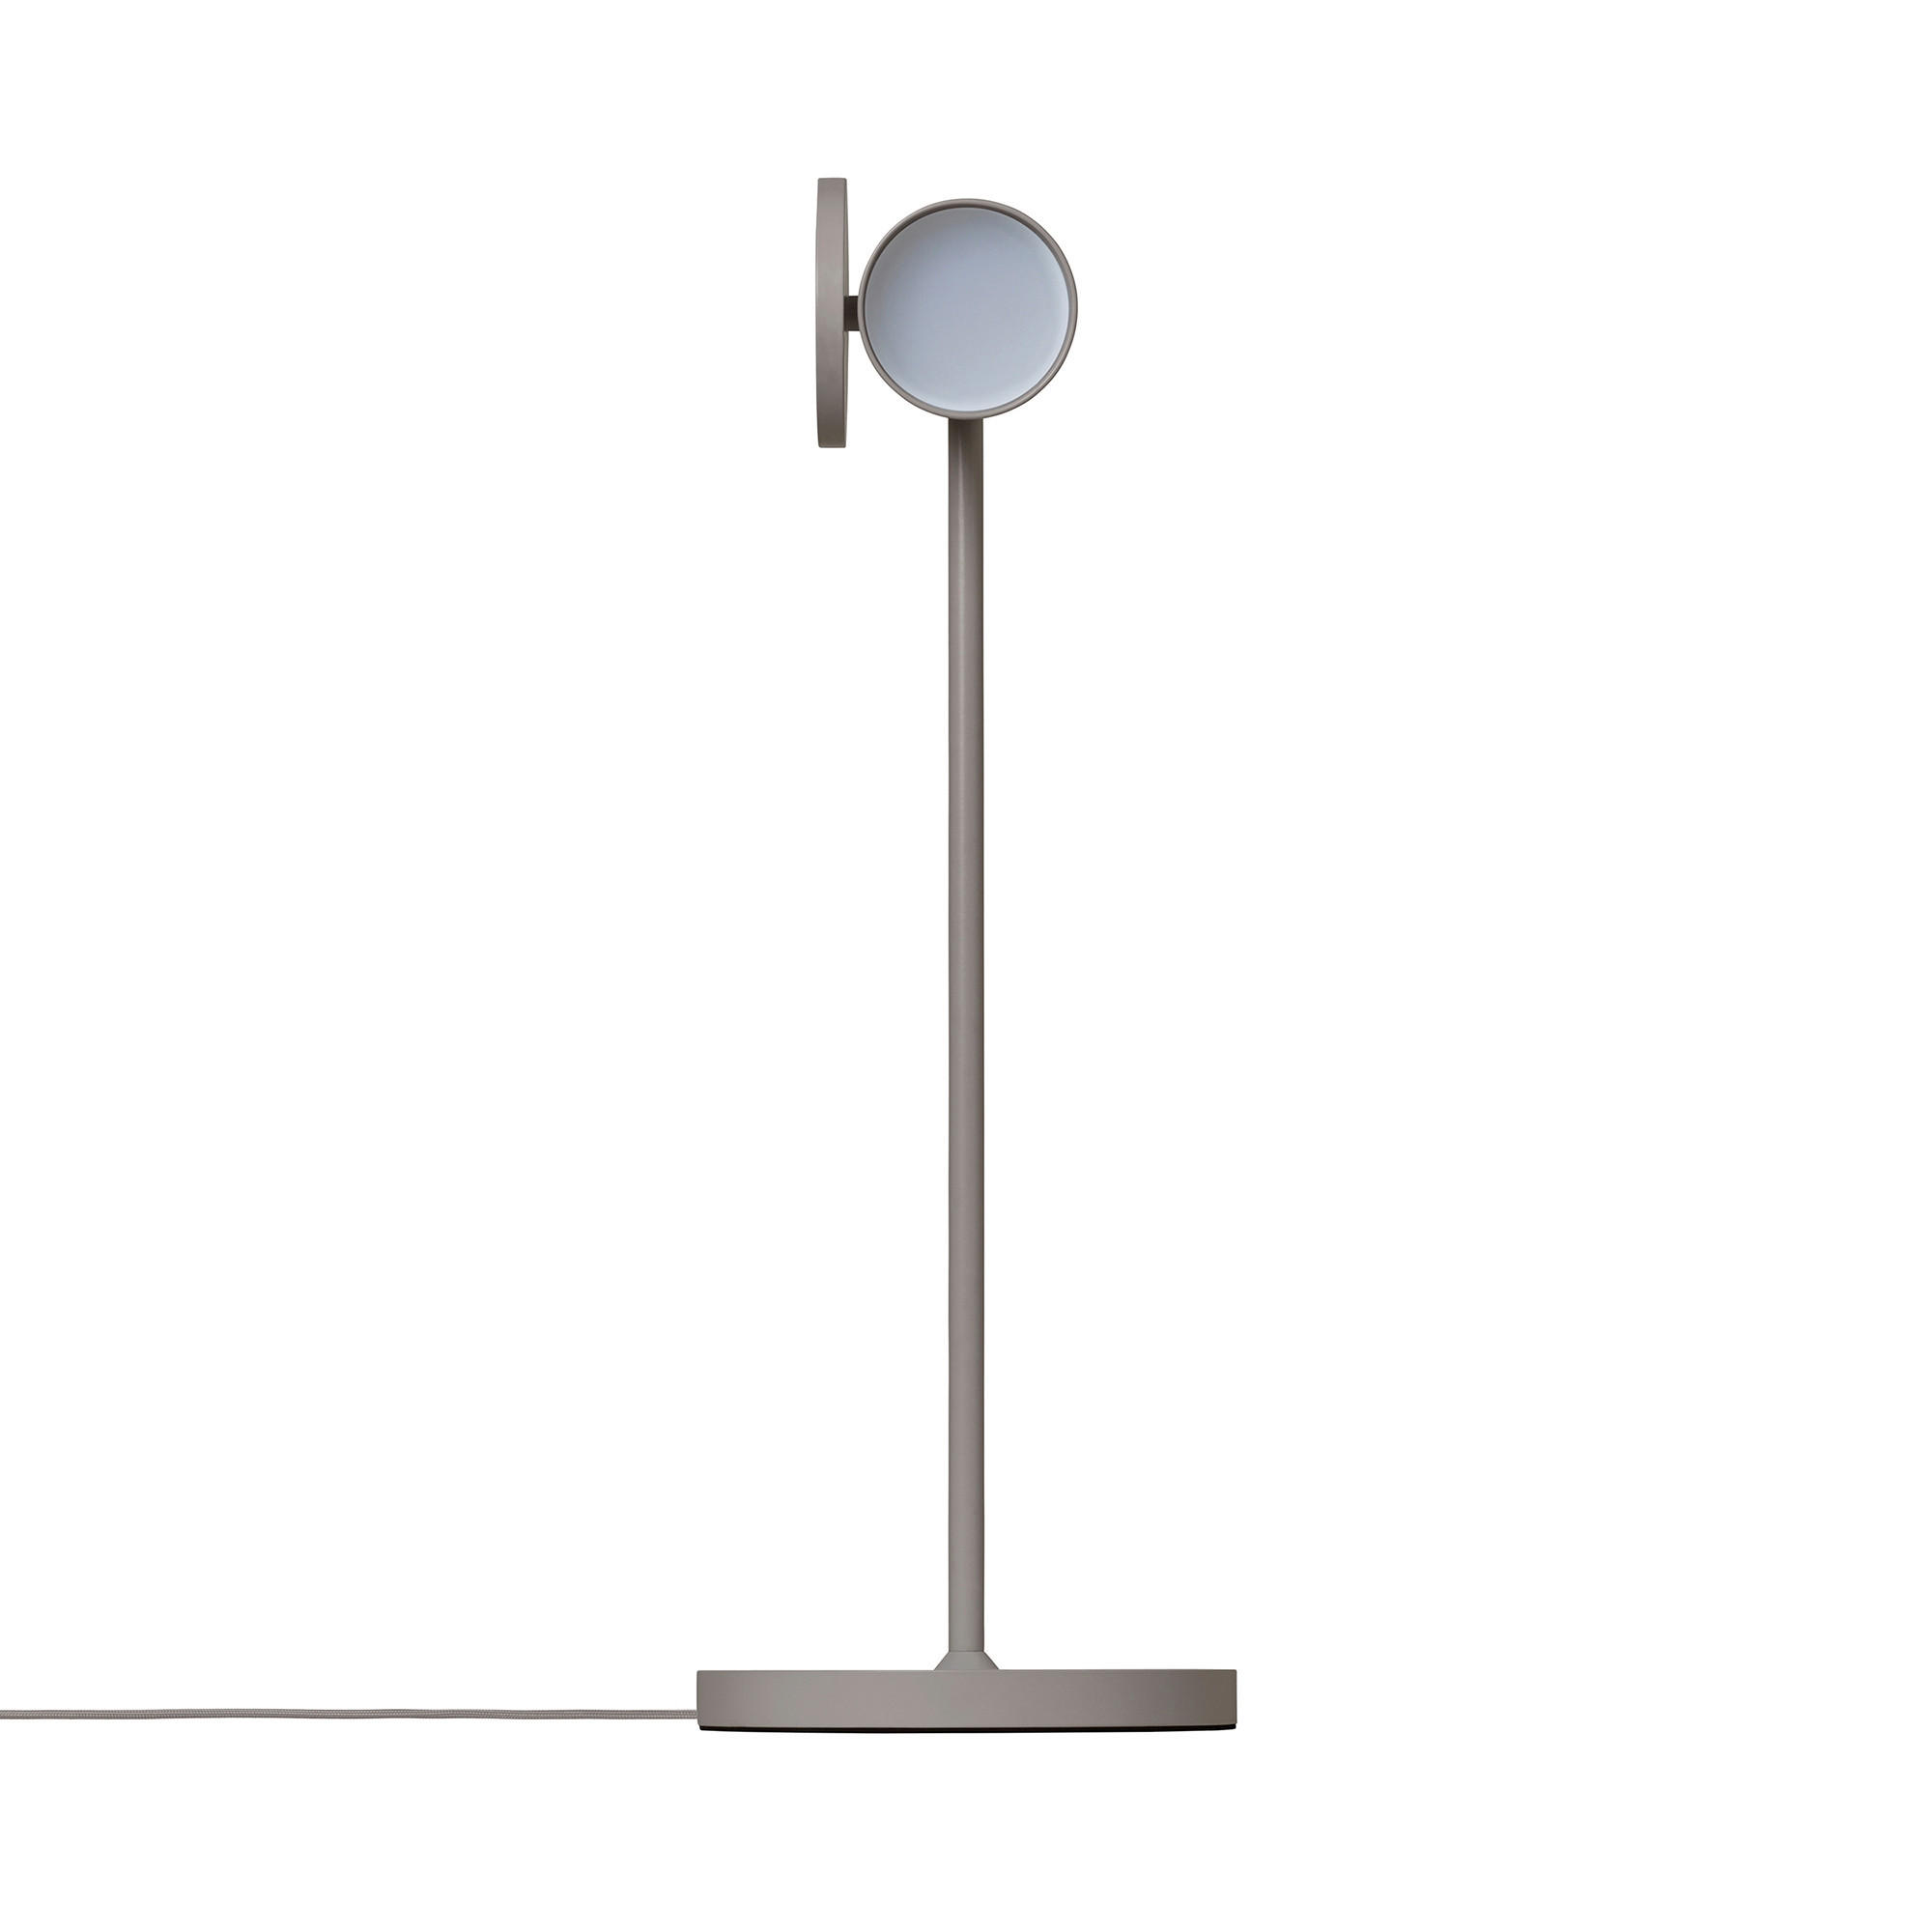 SCHREIBTISCHLEUCHTE STAGE 15/44 cm   - Taupe, Design, Metall (15/44cm) - Blomus